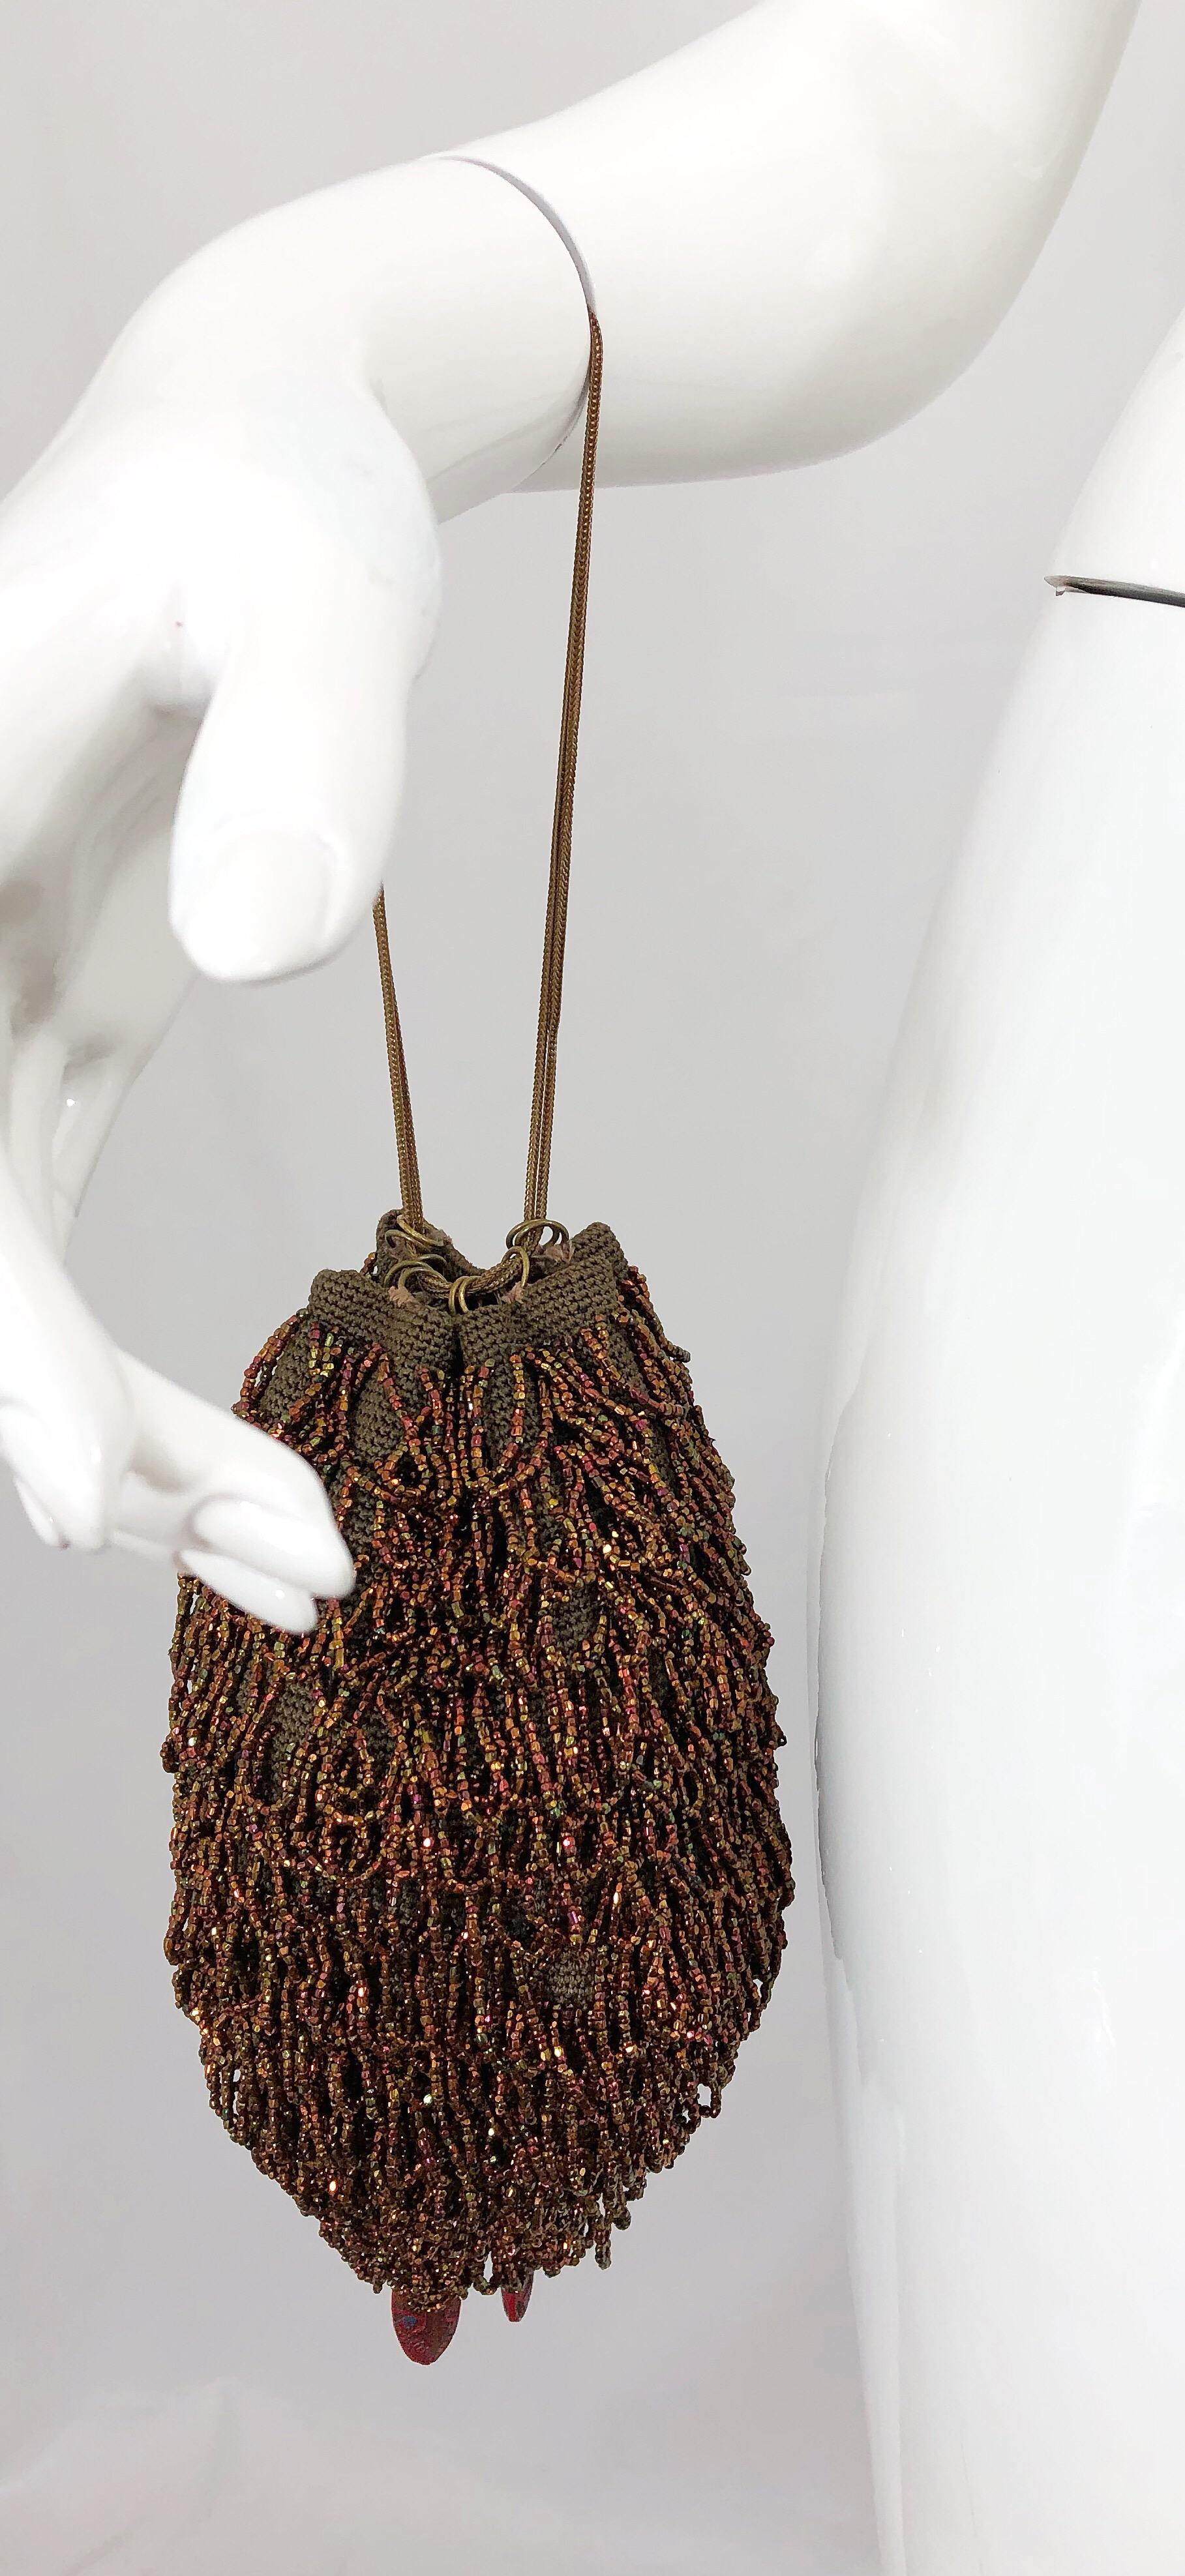 Wunderschöne bronzene und braune Abendtasche aus den 1920er Jahren mit Perlen! Die perfekte Alternative zur Clutch! Dieses seltene Schmuckstück verfügt über zwei goldene Metallketten und kann so eingestellt werden, dass man es lang oder kurz tragen